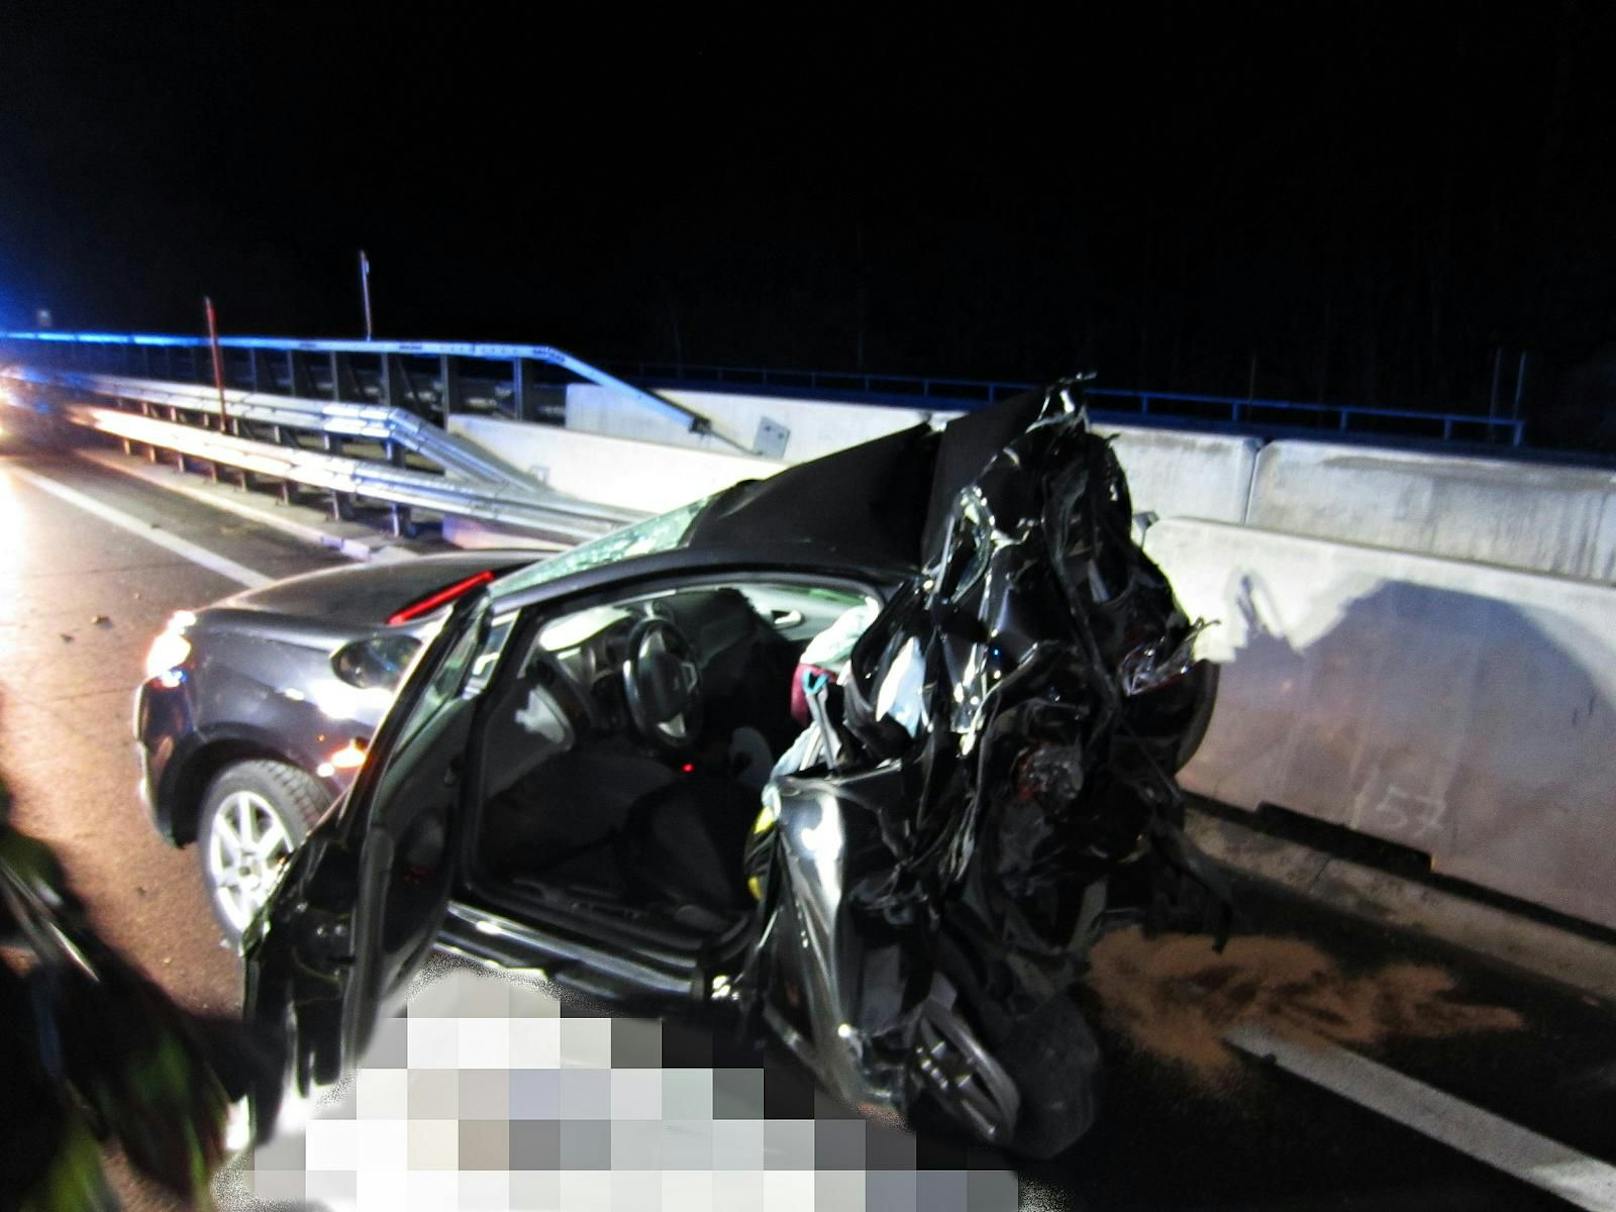 Bei dem schweren Verkehrsunfall am Südportal des Gleinalmtunnels (A9) am 10. Februar 2022 wurde ein 56-Jähriger getötet.